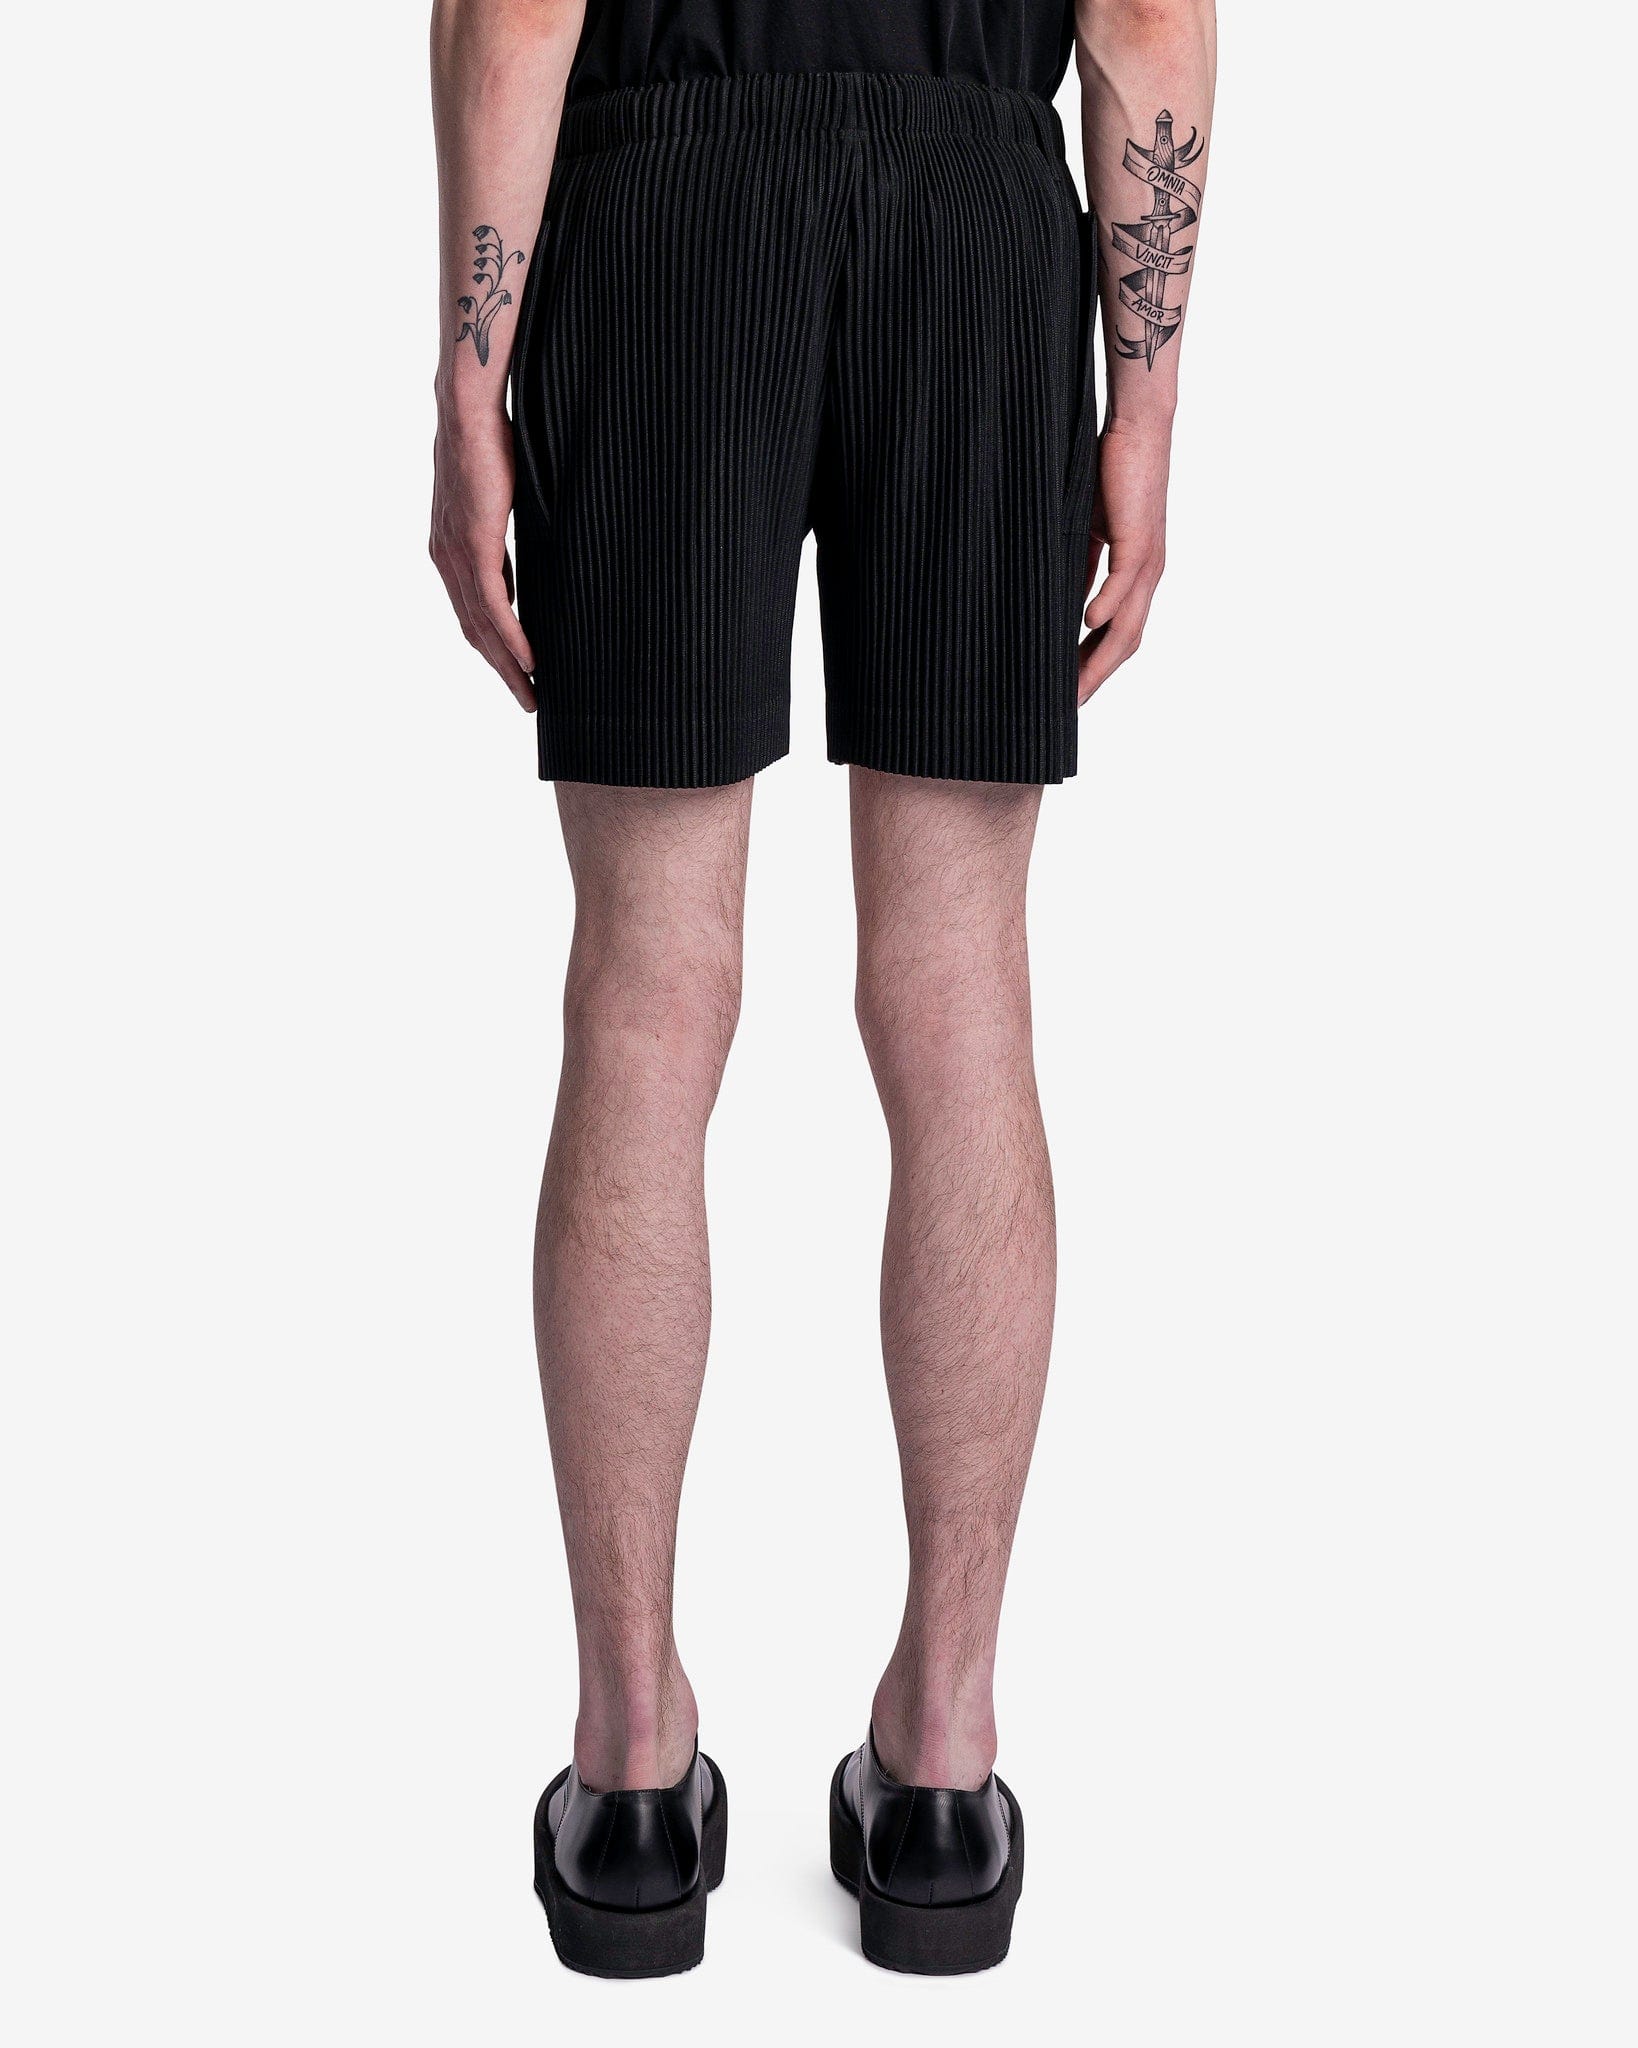 Flip Shorts in Black